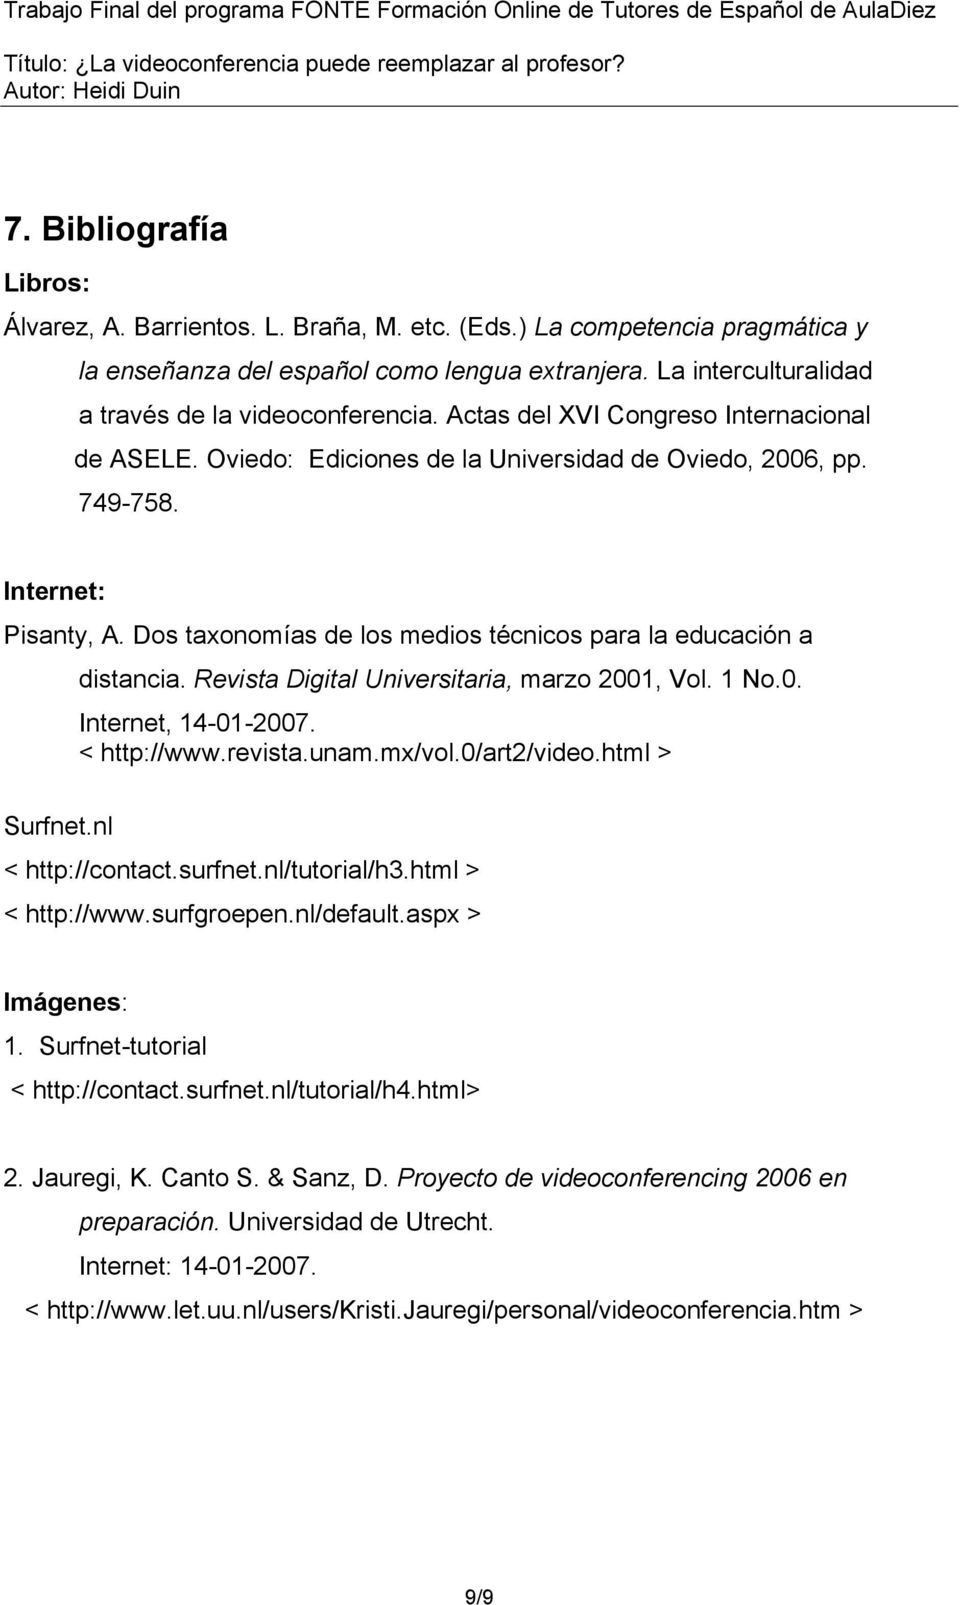 Dos taxonomías de los medios técnicos para la educación a distancia. Revista Digital Universitaria, marzo 2001, Vol. 1 No.0. Internet, 14-01-2007. < http://www.revista.unam.mx/vol.0/art2/video.